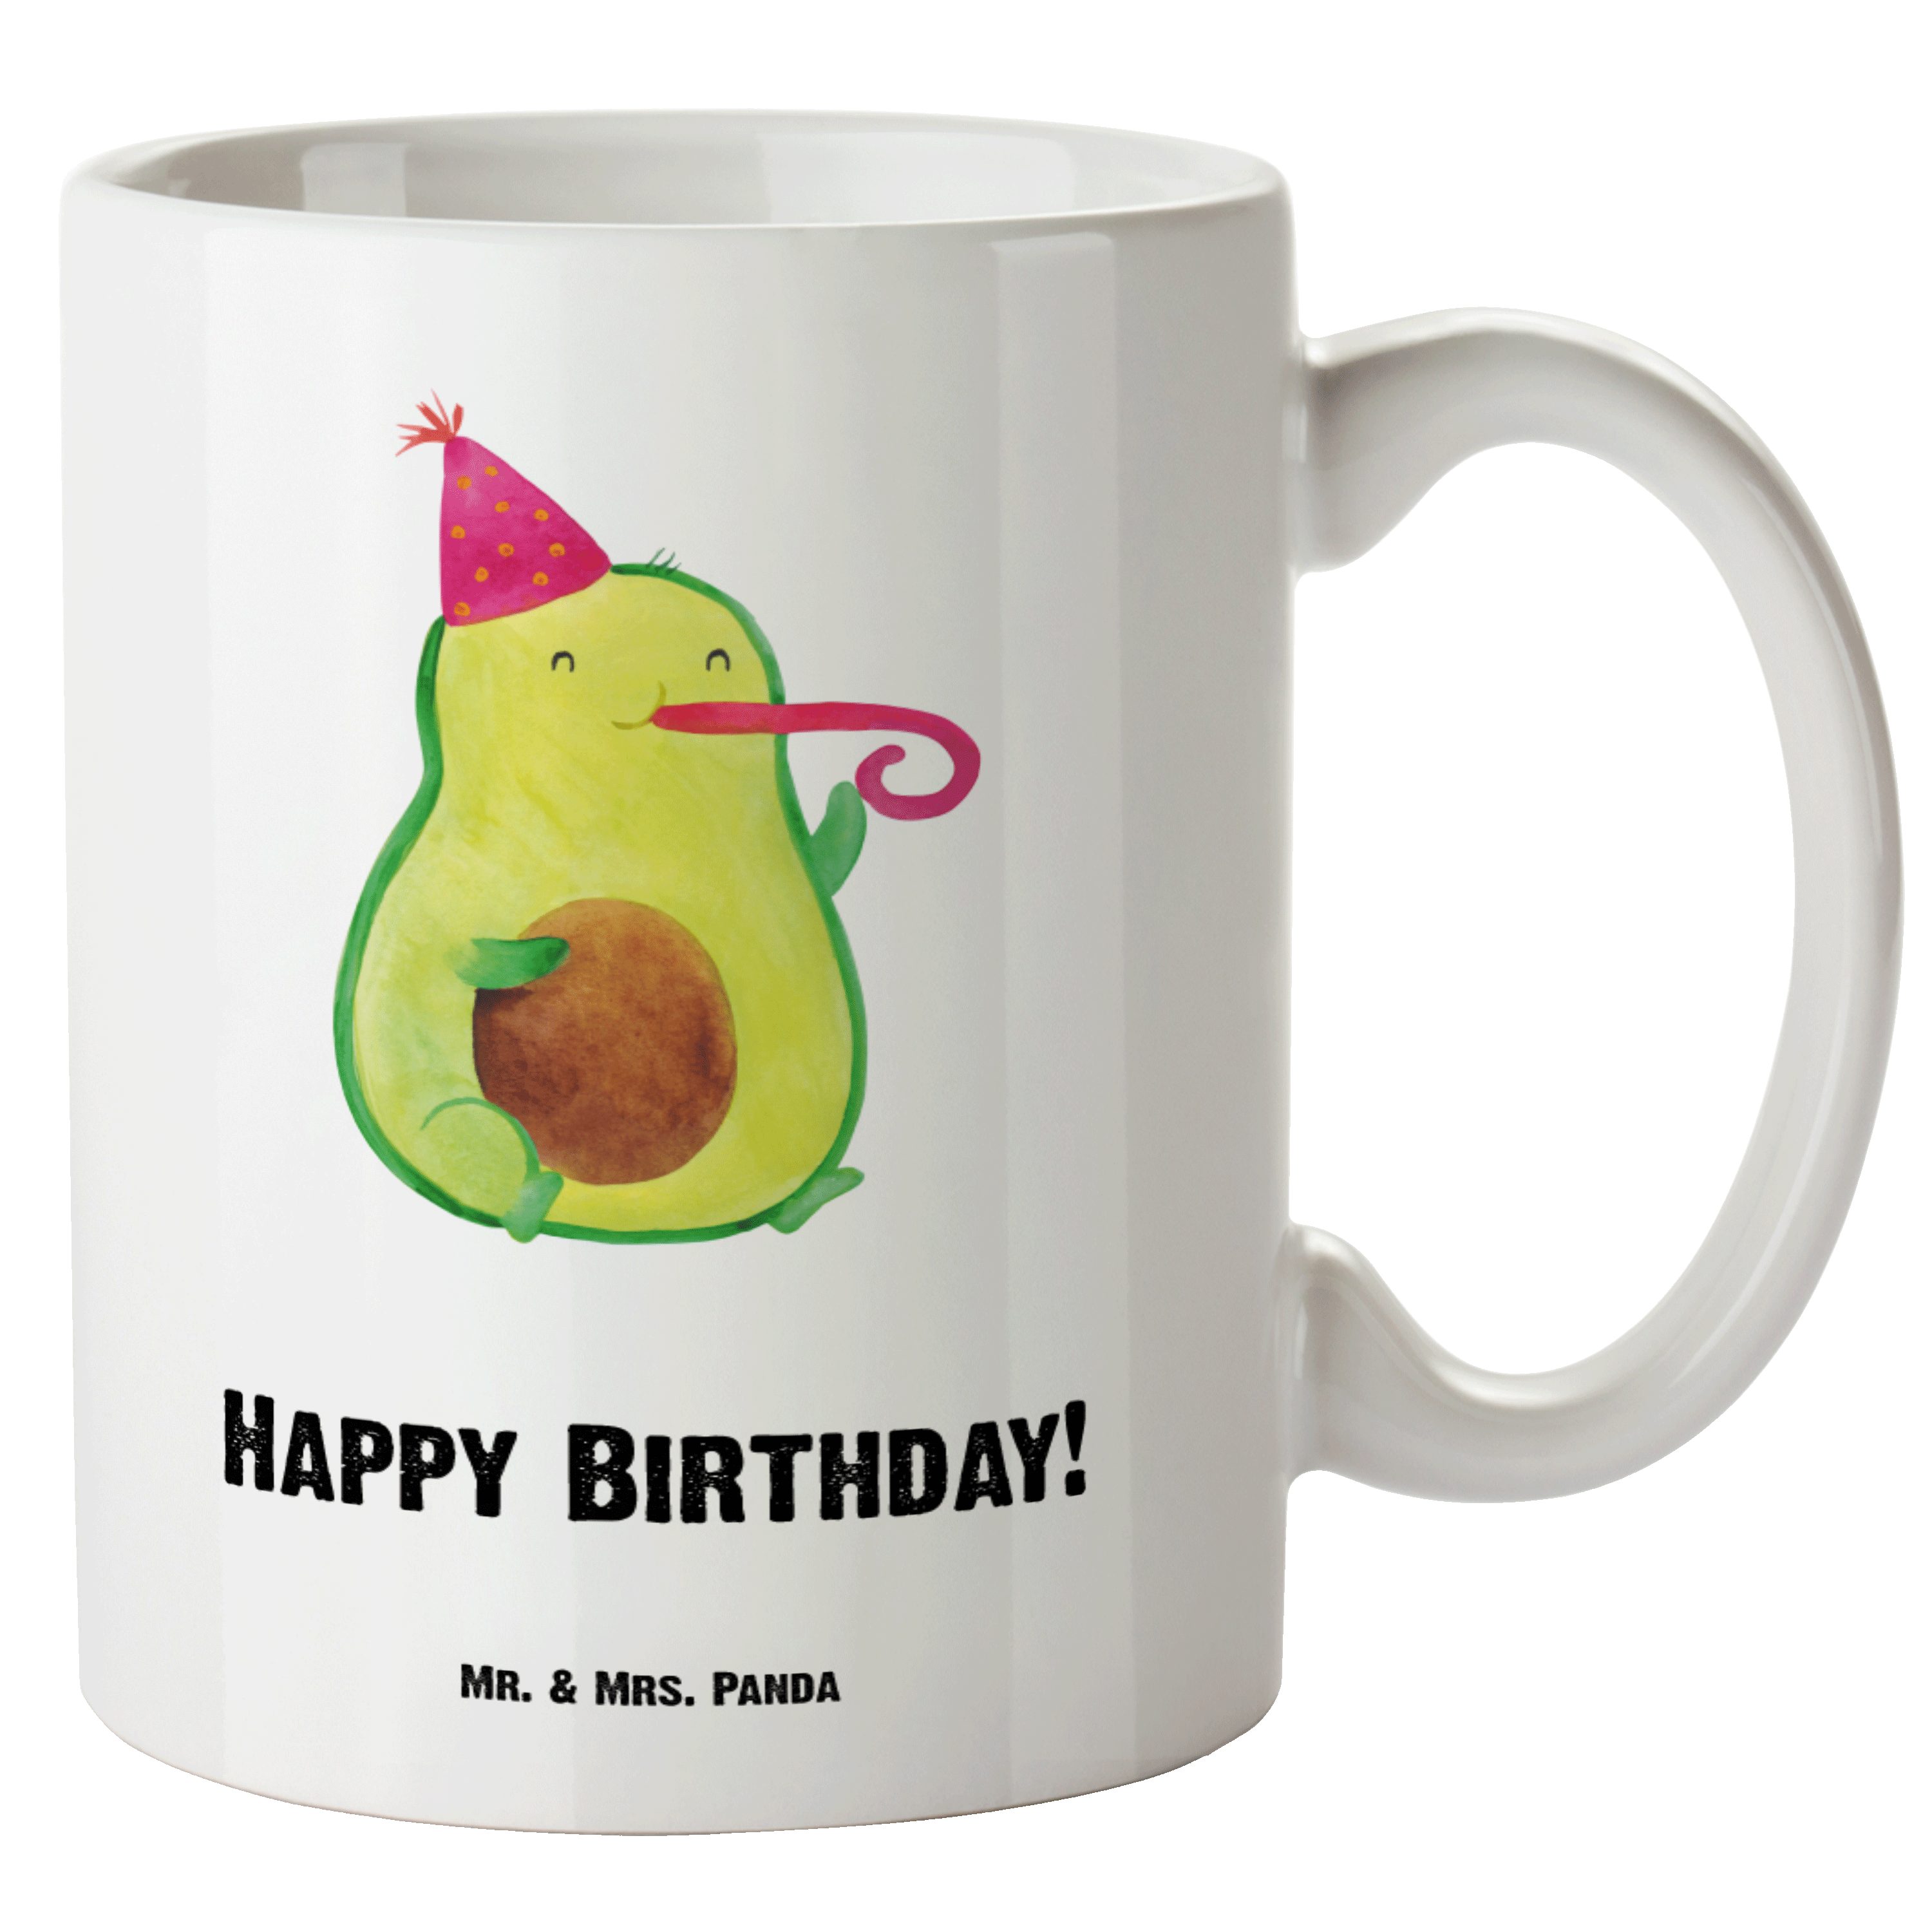 Mr. & Mrs. Panda Tasse Avocado Birthday - Weiß - Geschenk, Überraschung, Groß, spülmaschinen, XL Tasse Keramik